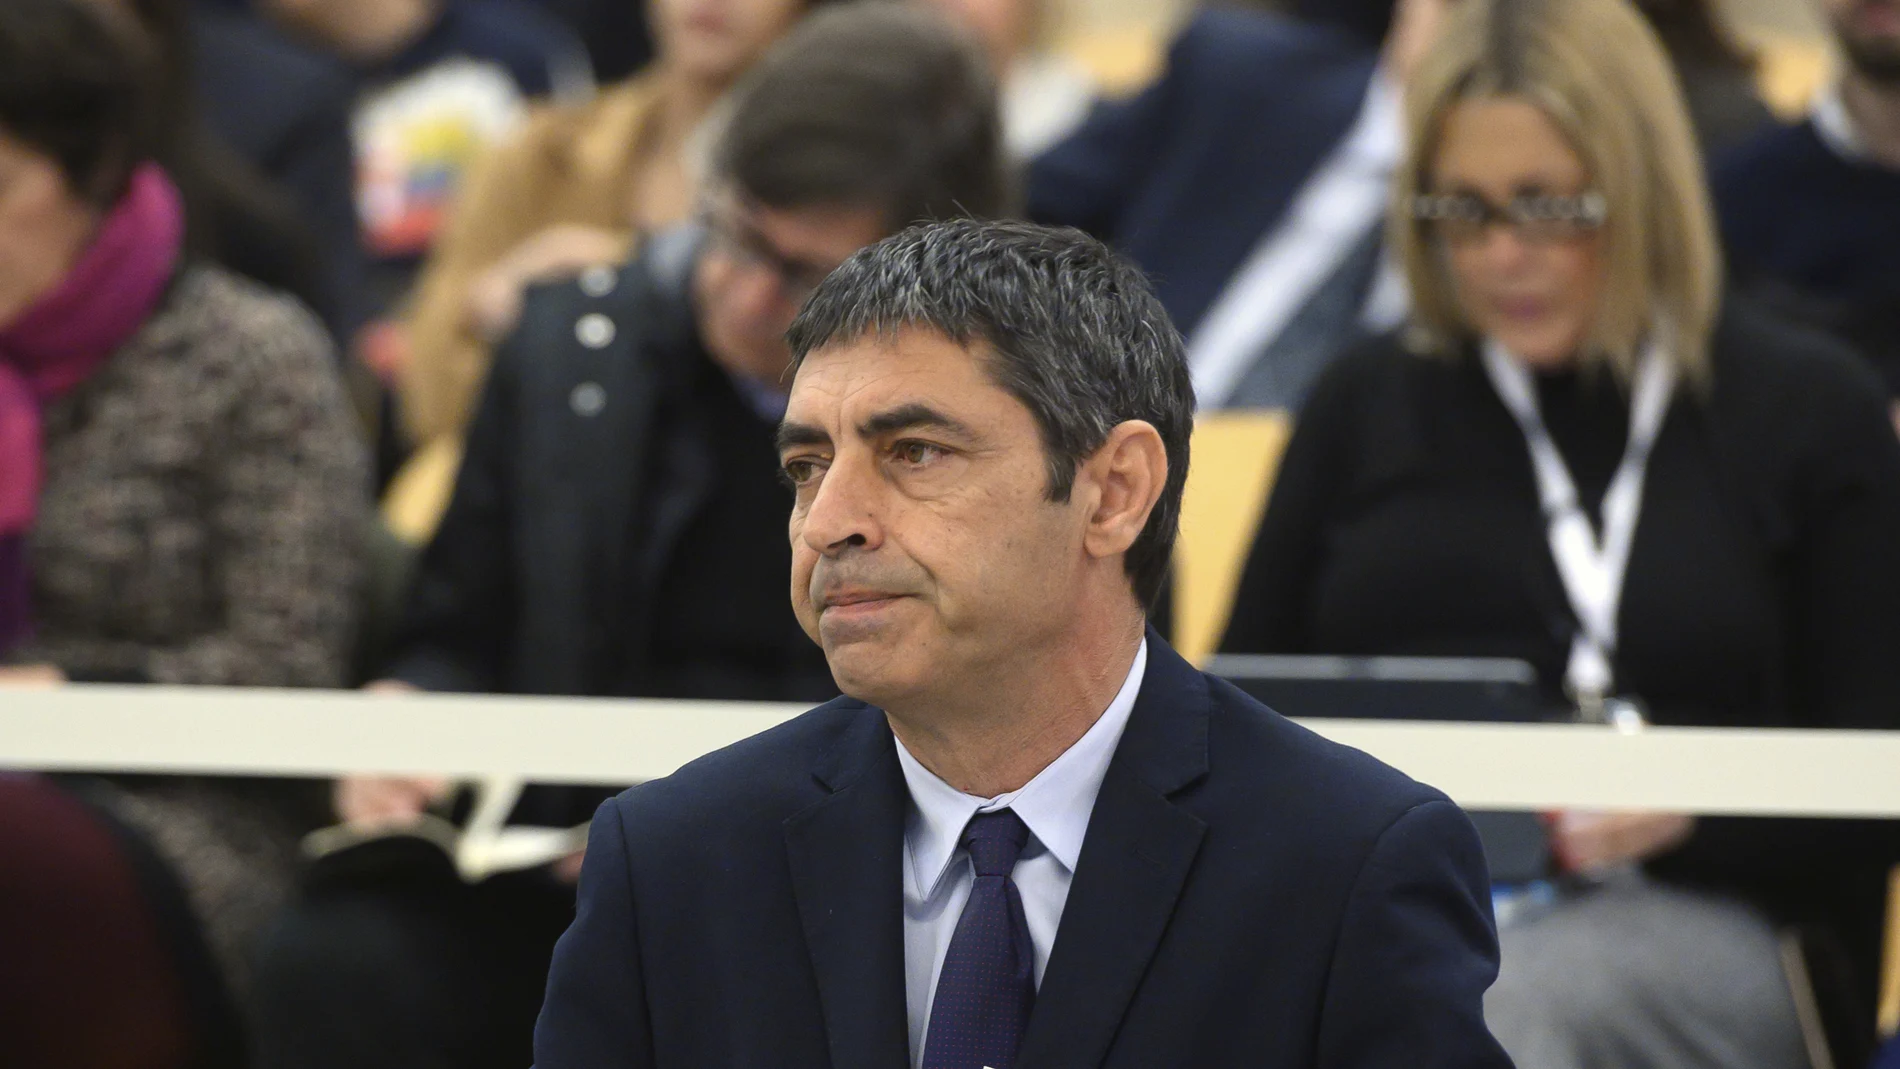 El mayor de los Mossos Josep Lluís Trapero, en una de las sesiones del juicio a la ex cúpula de los Mossos